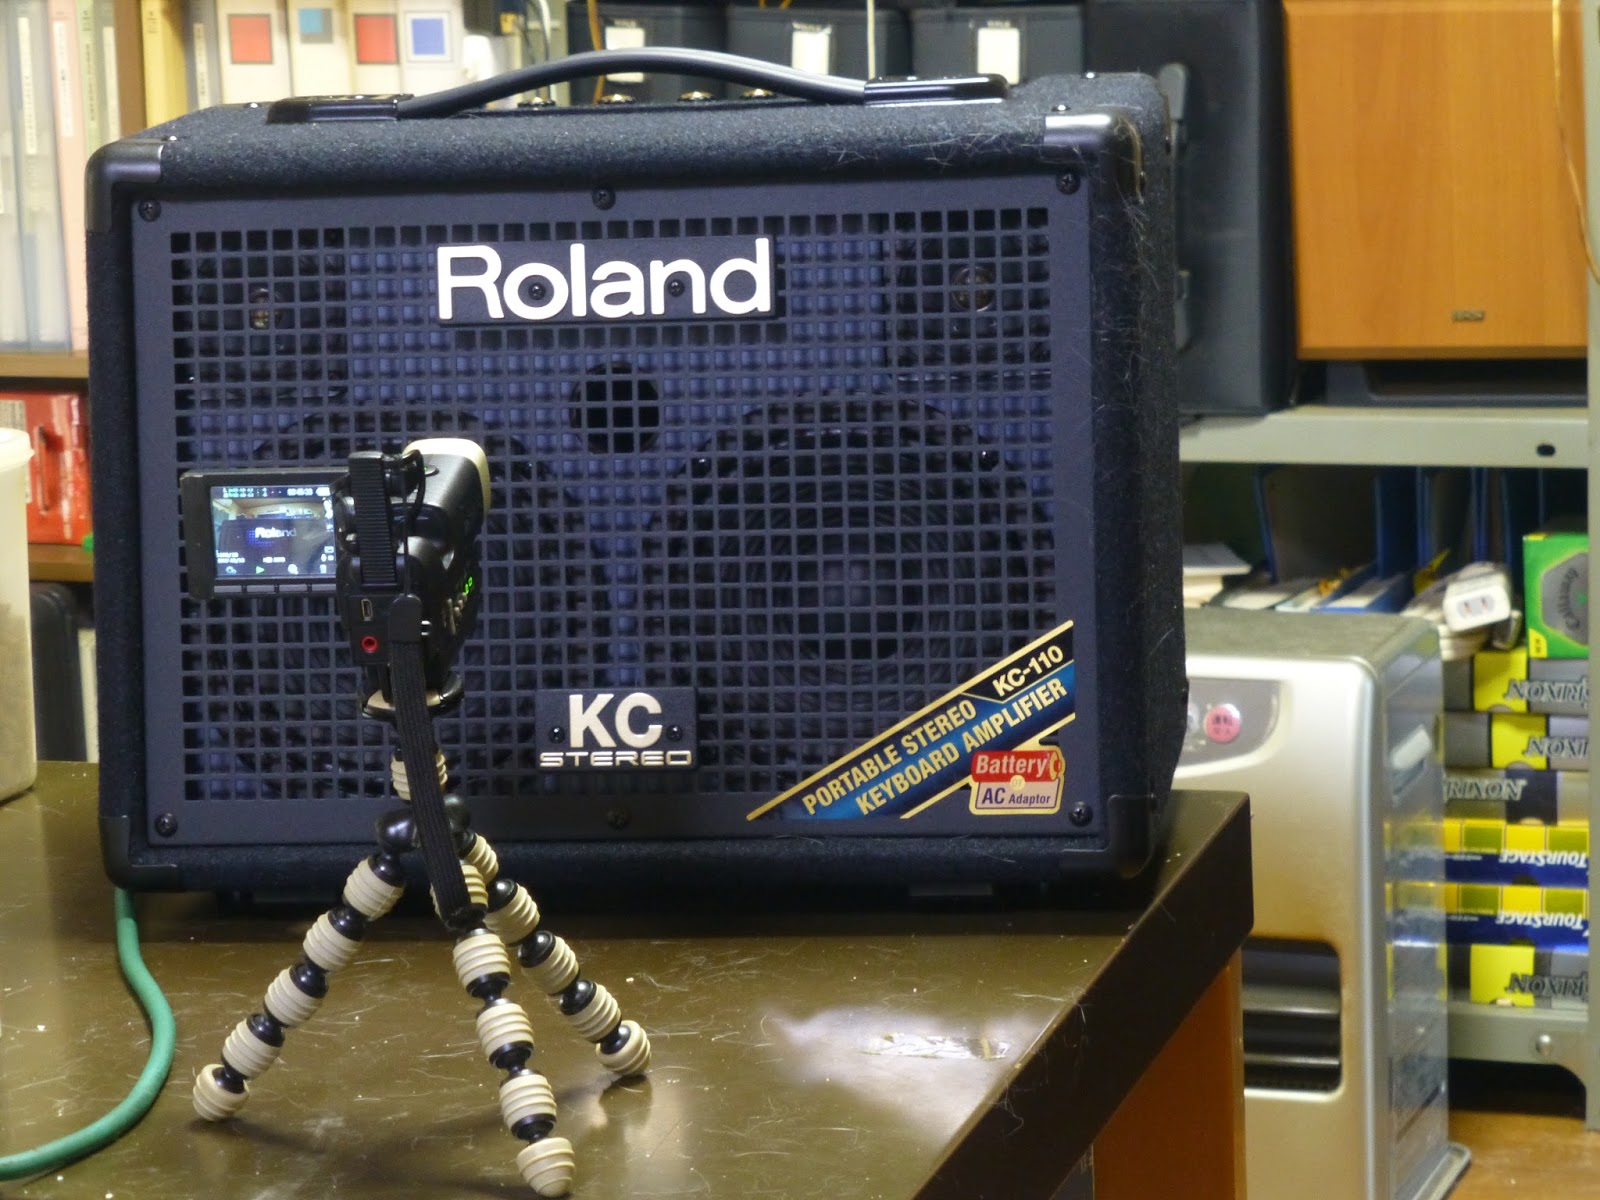 ギターでハッピー！: キーボードアンプ Roland KC-110